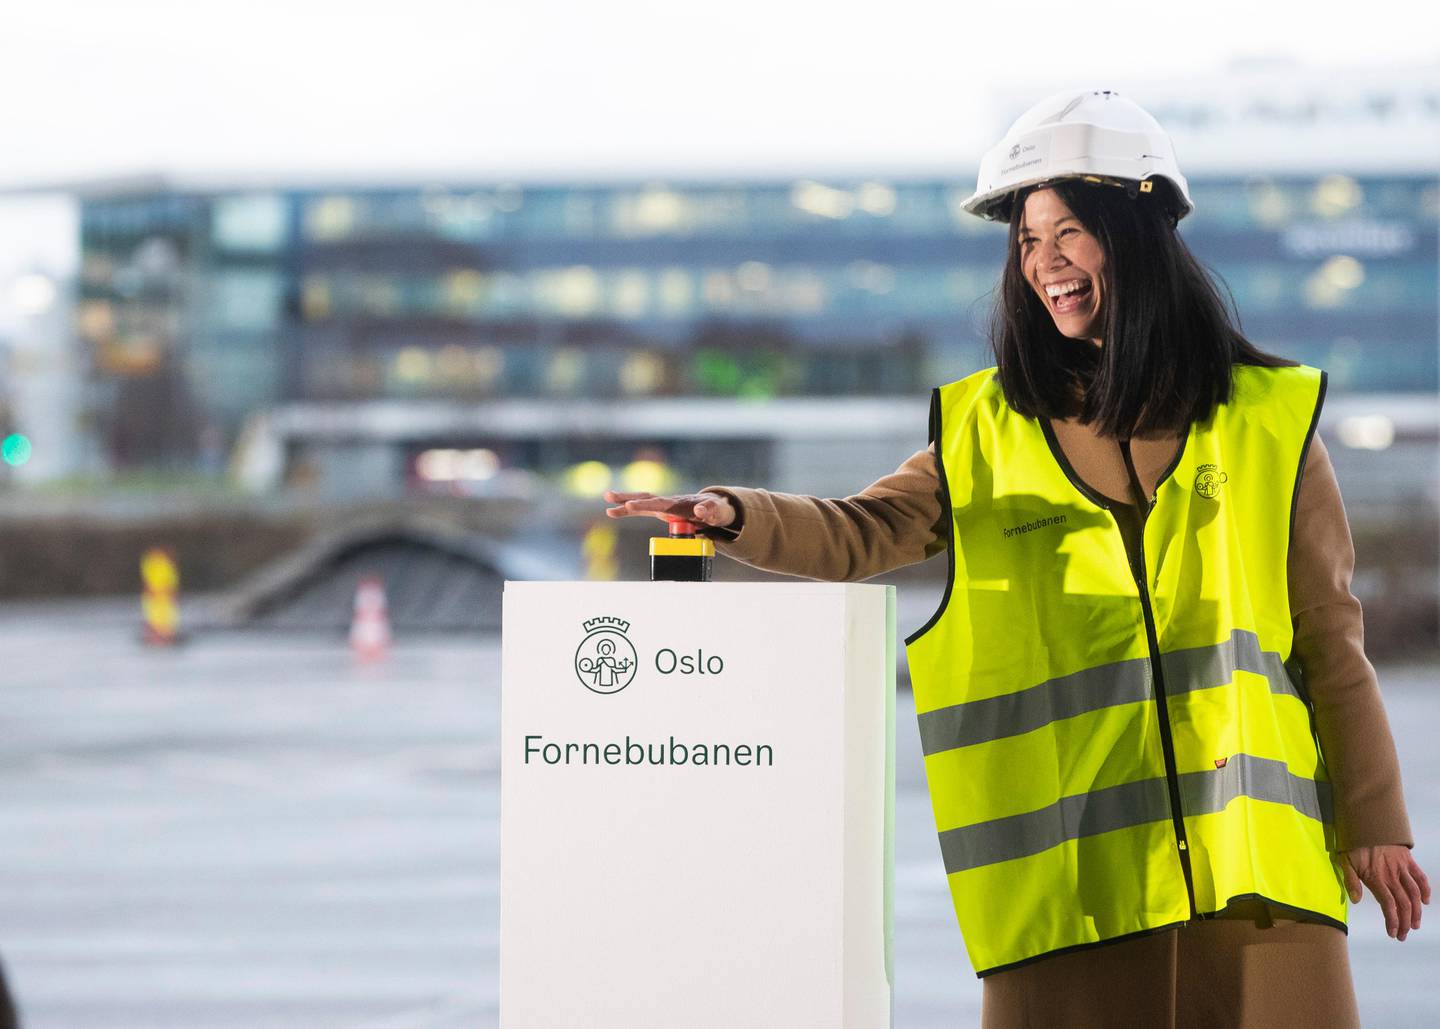 Fornebu 20201211. 
Oslos miljø- og samferdselsbyråd Lan Marie Berg (MDG) under anleggsstarten av den nye Fornebubanen
Foto: Terje Pedersen / NTB